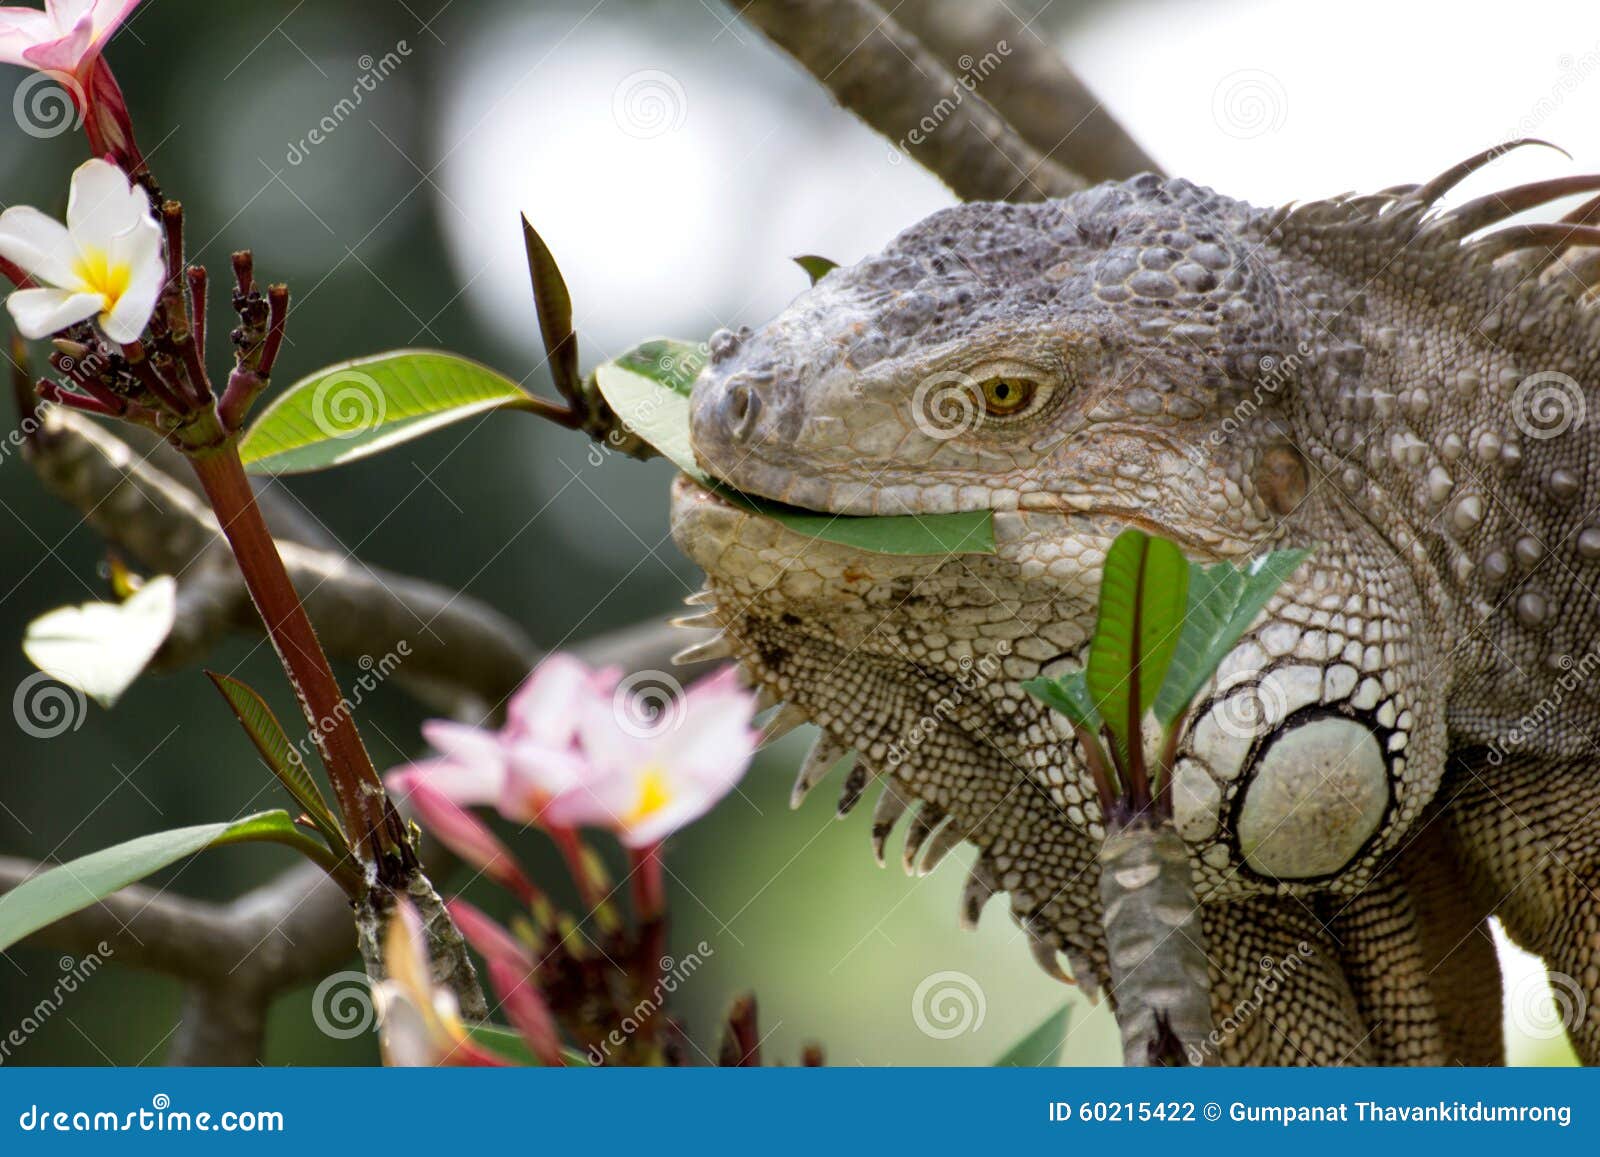 iguana que come